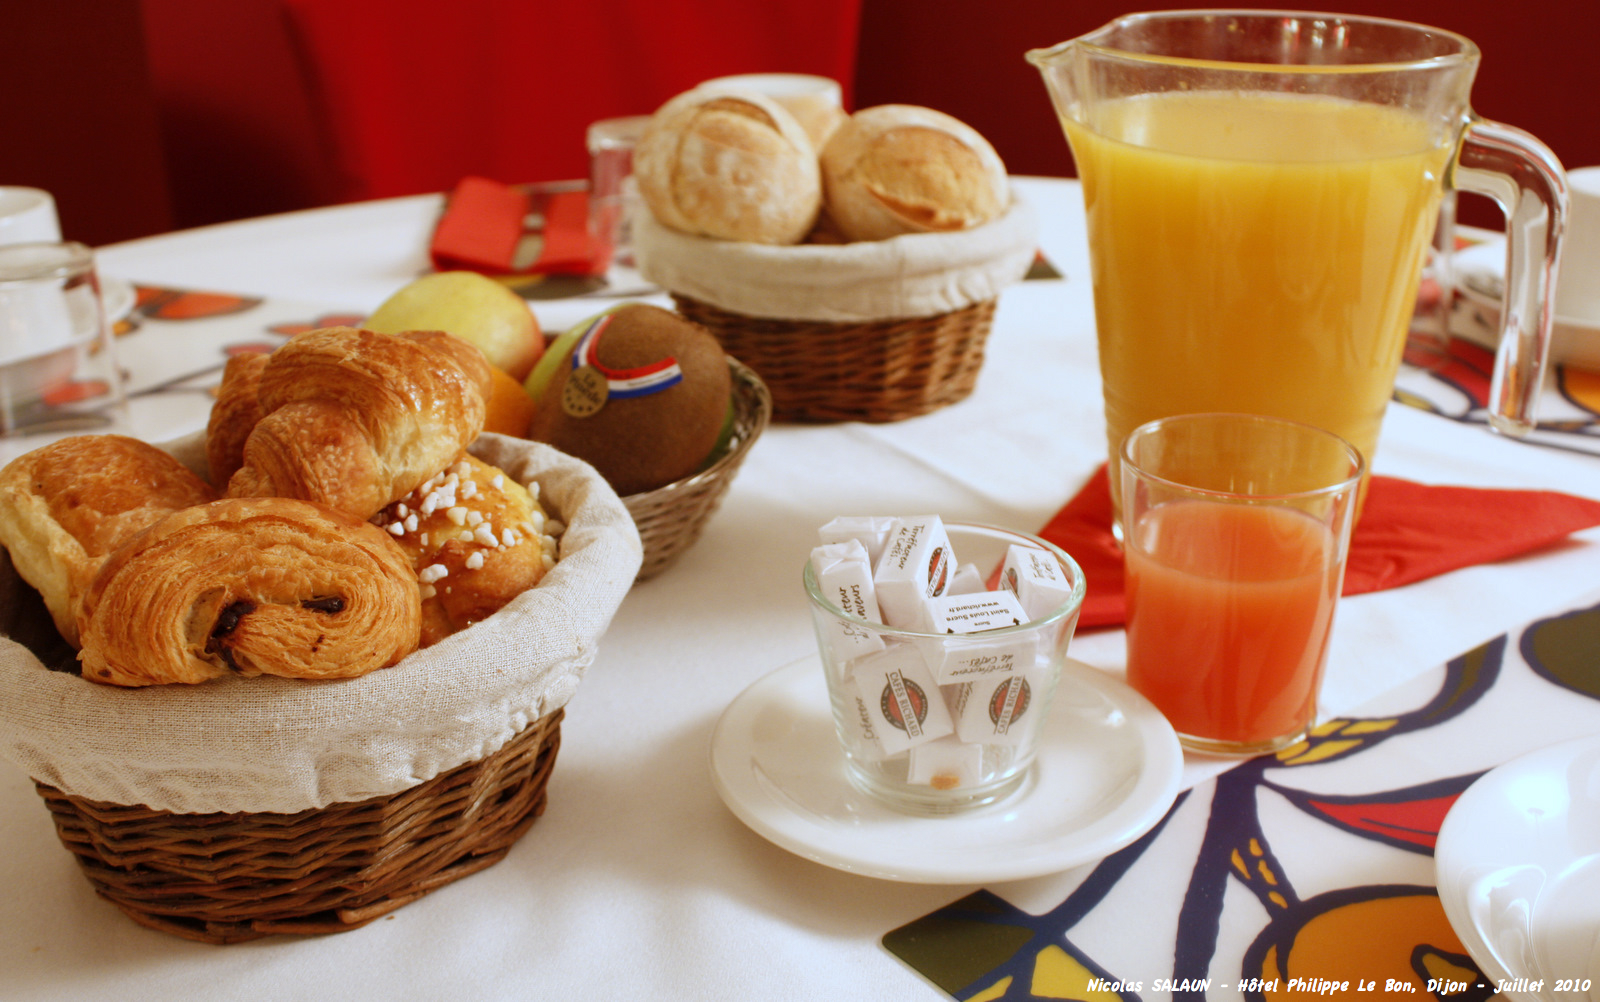 Le petit déjeuner est nécessaire pour donner des forces pour bien commencer la journée.&nbsp;© Nicolas SAL 1, Flickr, cc by nc nd 2.0